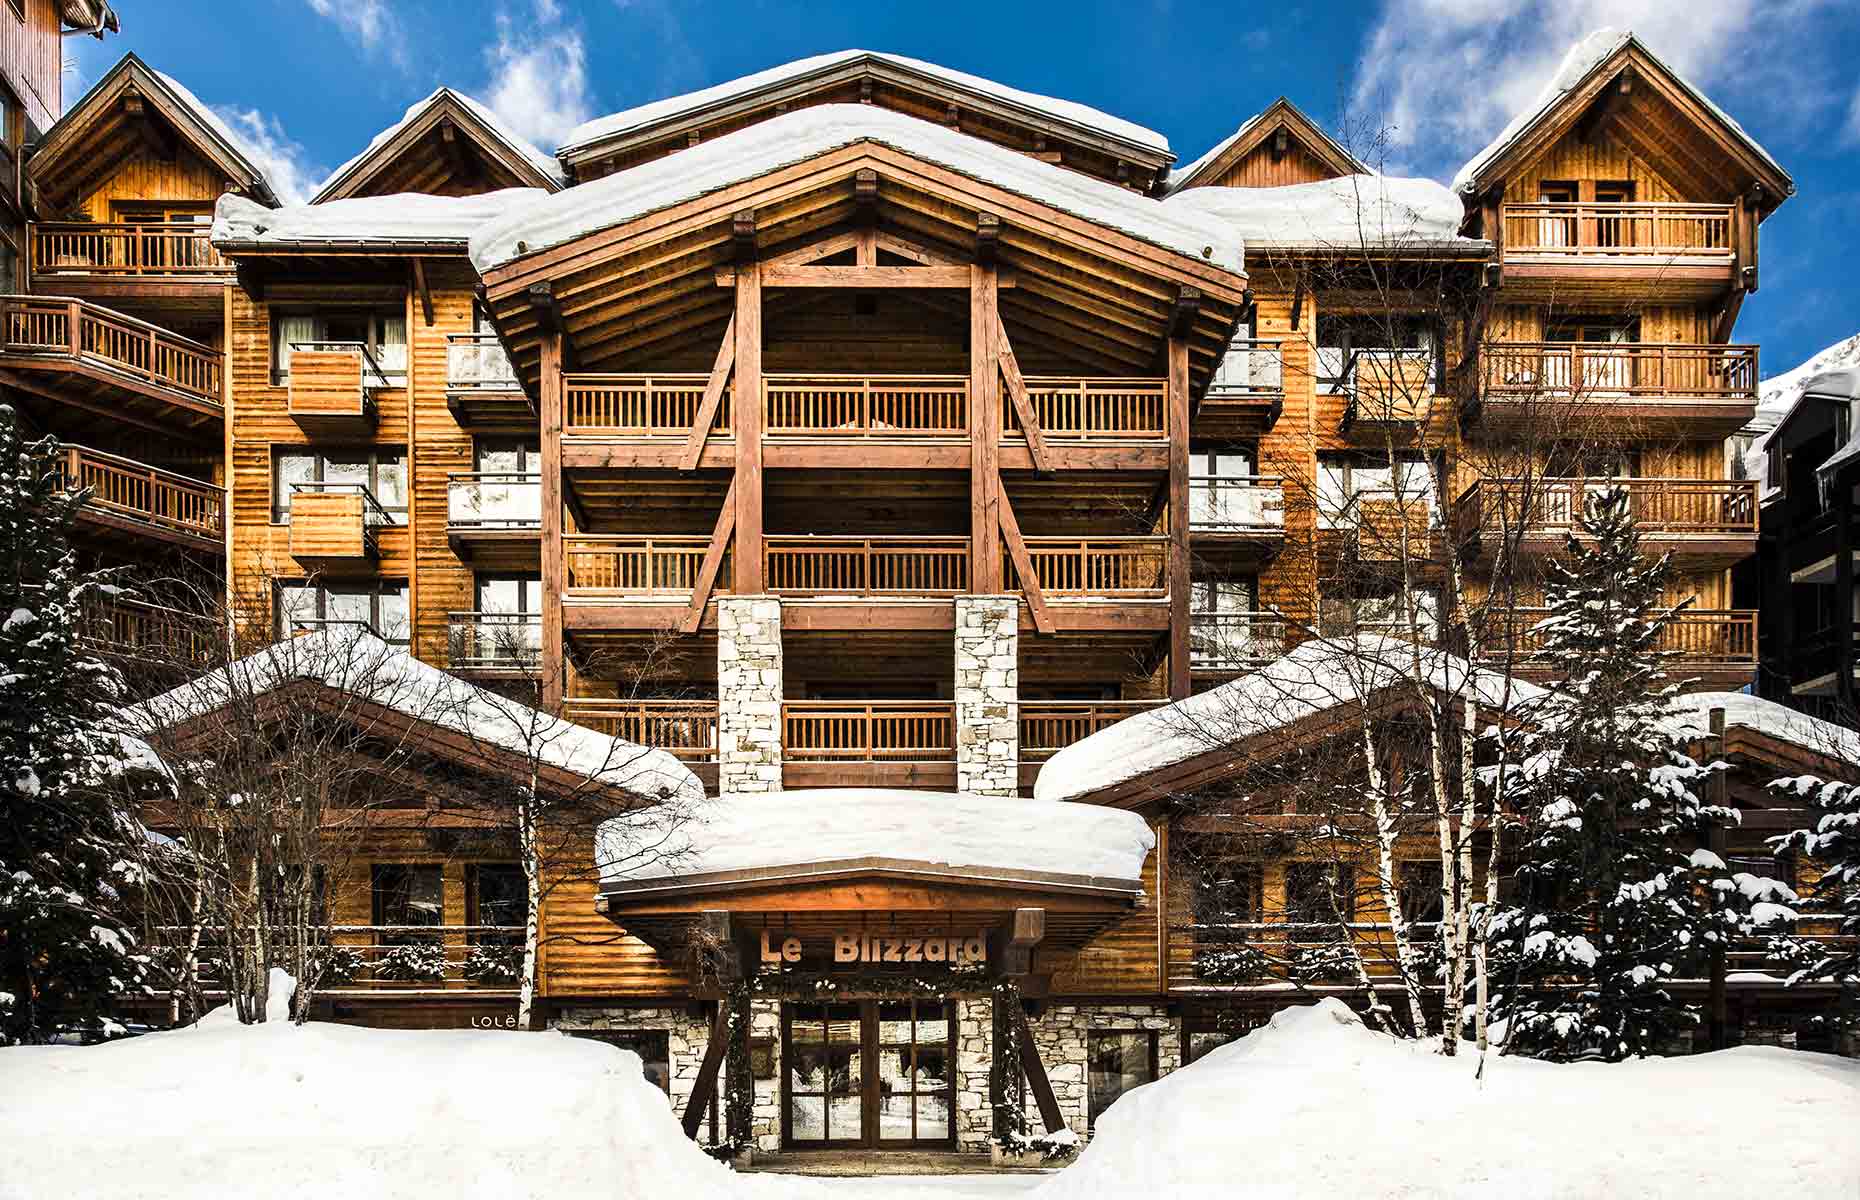 Le Blizzard - Hôtel Val d'Isère, Savoie